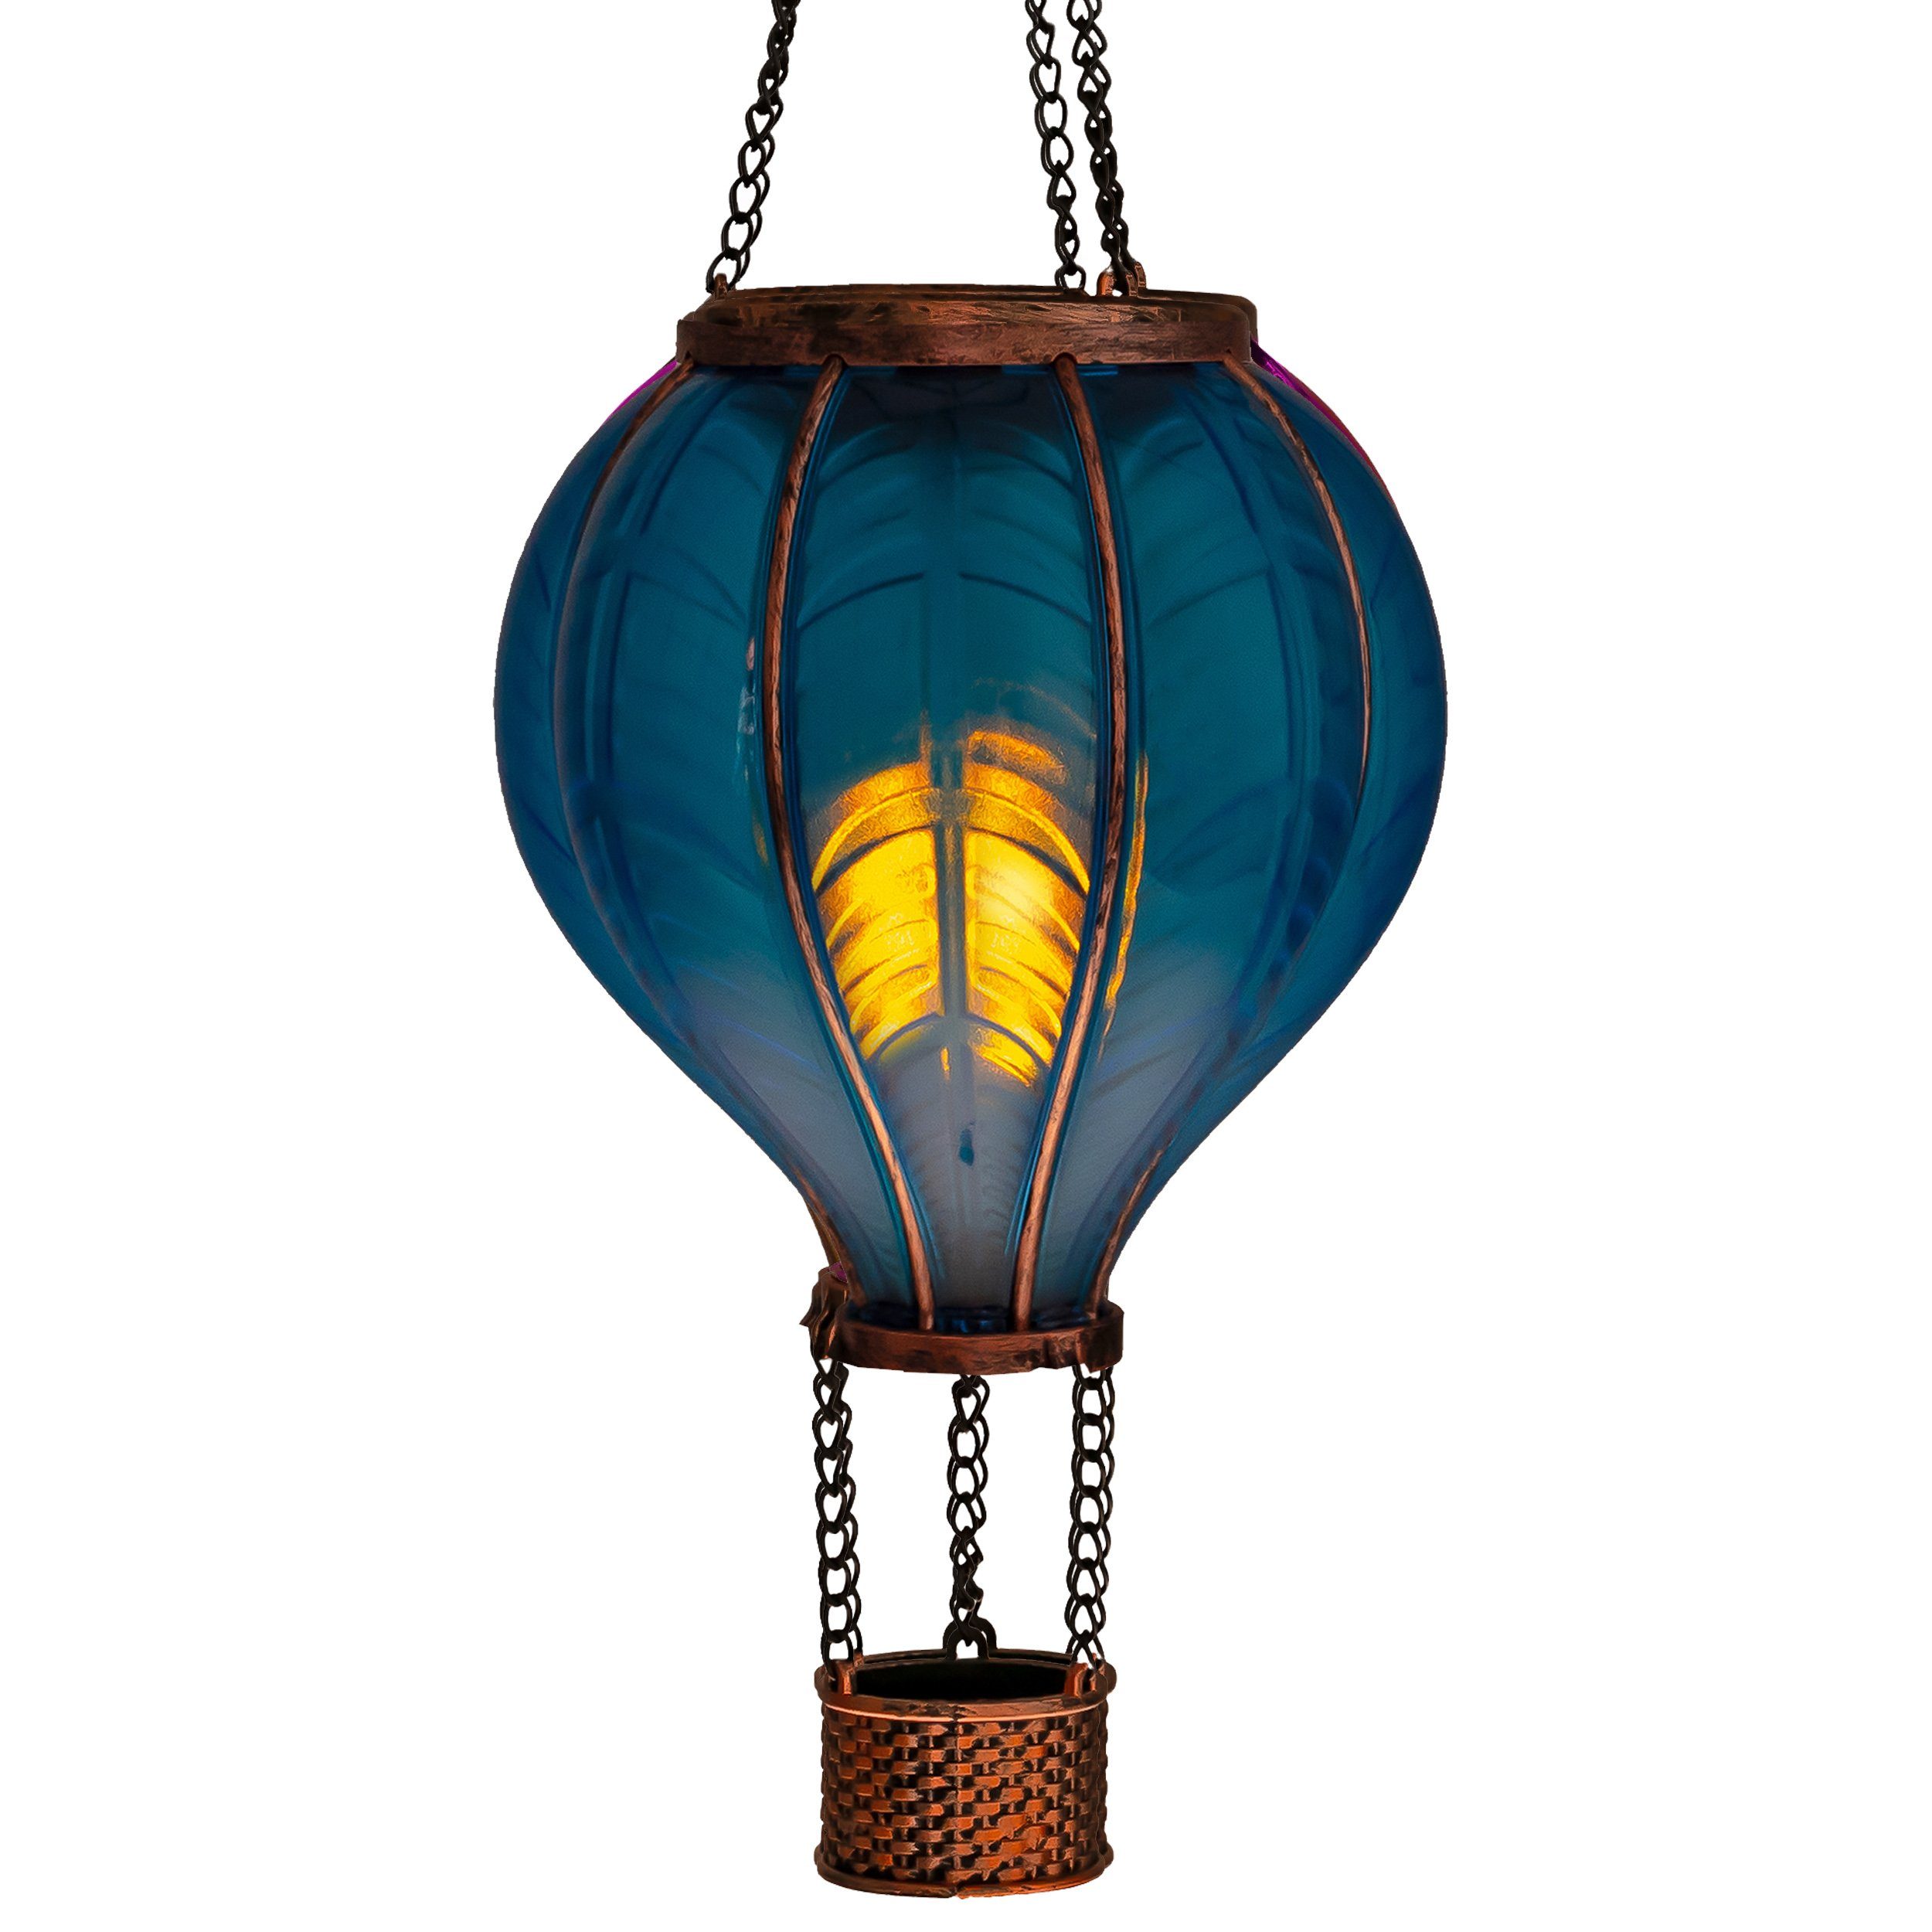 IC Gardenworld LED Solarleuchte LED Solar Heißluftballon mit Flammeneffekt Beleuchtung zum Aufhängen, LED fest integriert, warm-weiß mit Flammeneffekt, 20 warm-weiße Lichter, inkl. Metallkette, Gesamthöhe ca. 40,5 cm